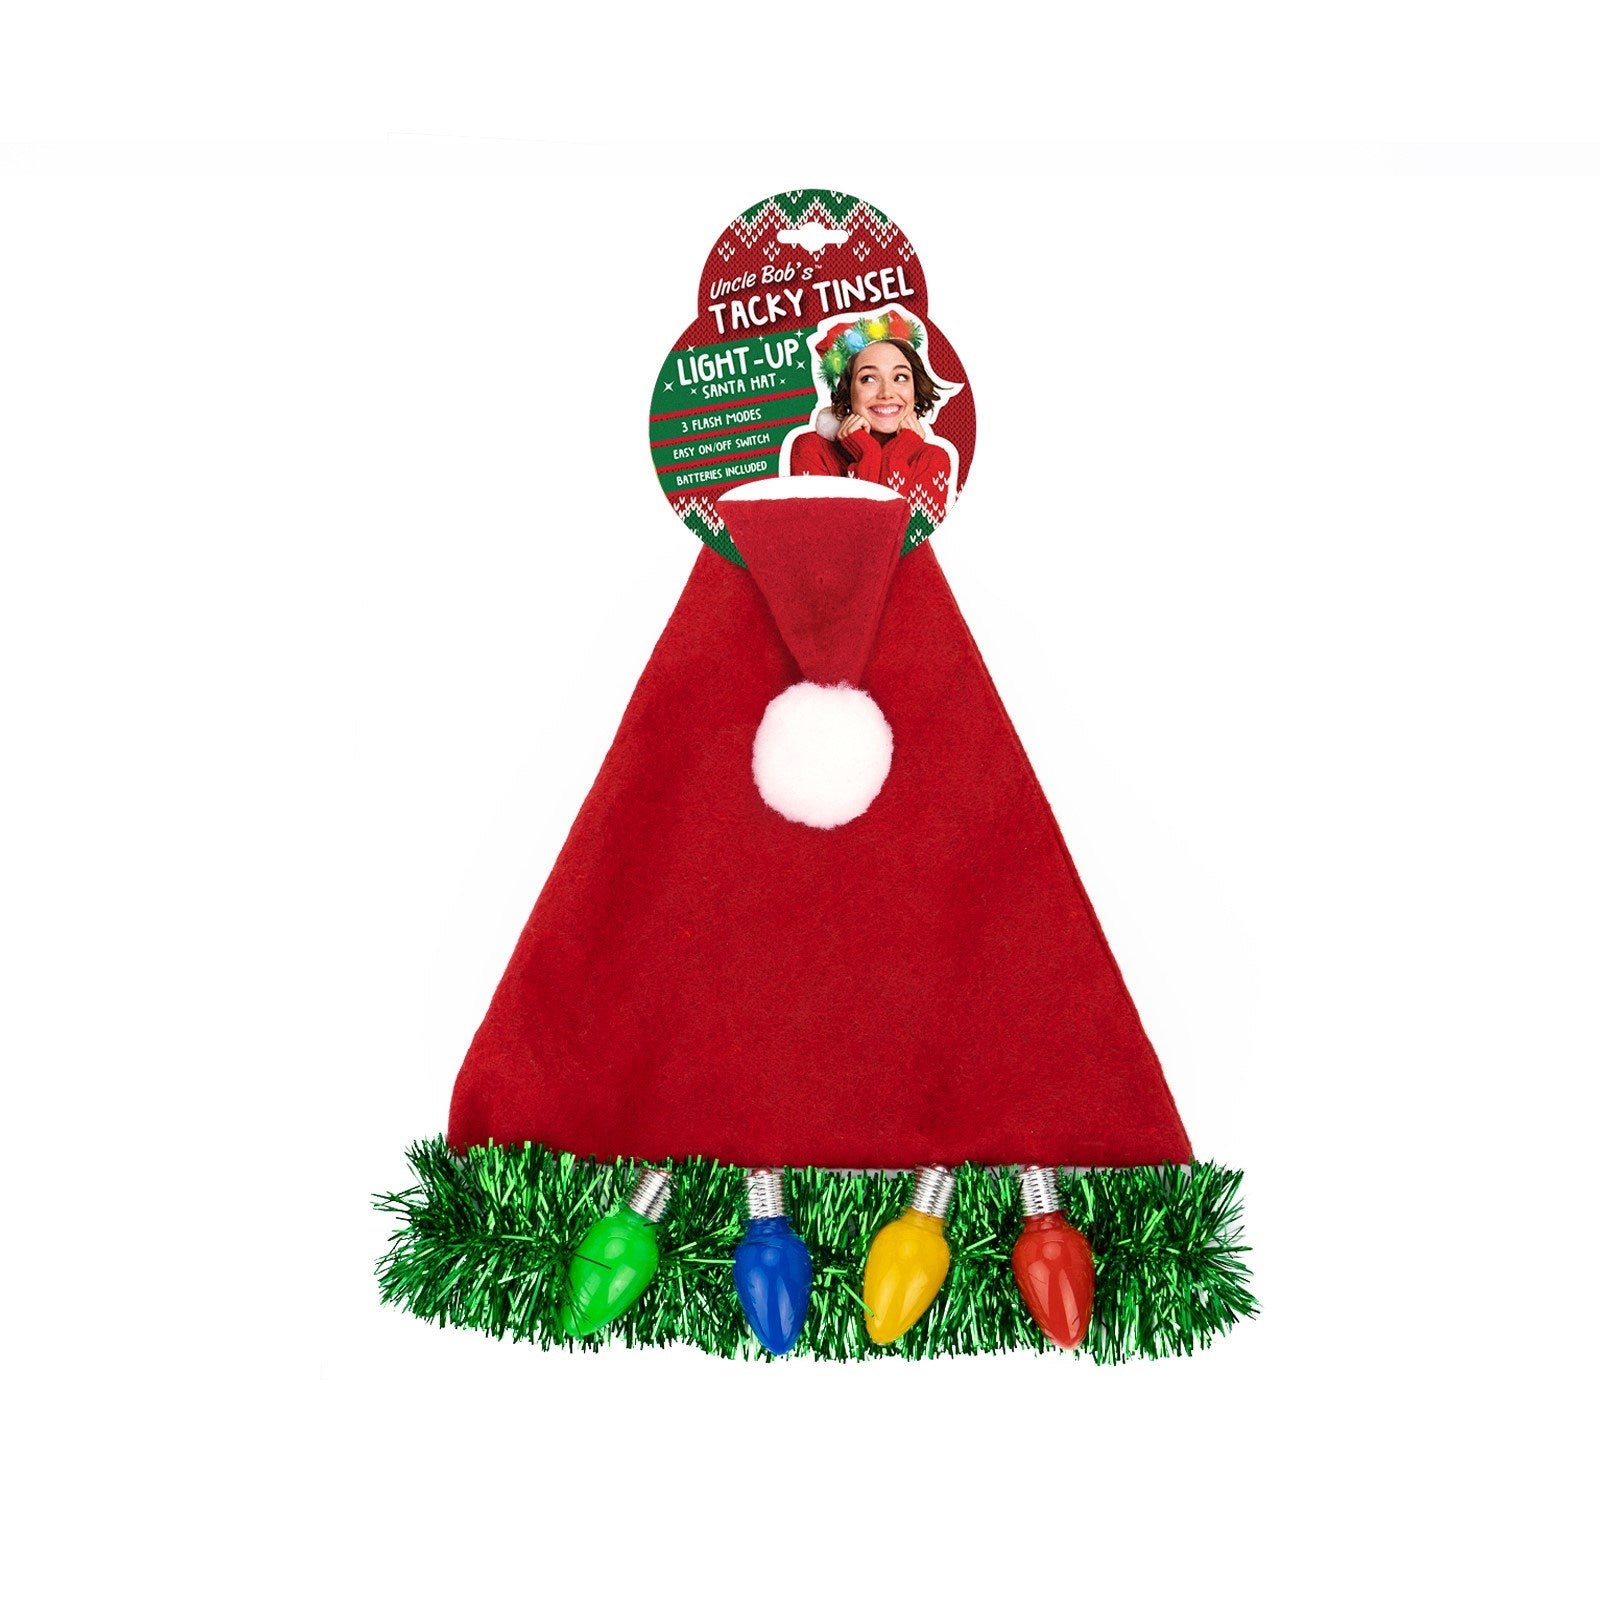 Uncle Bob's Tacky Tinsel Light-Up Santa Hat | Christmas